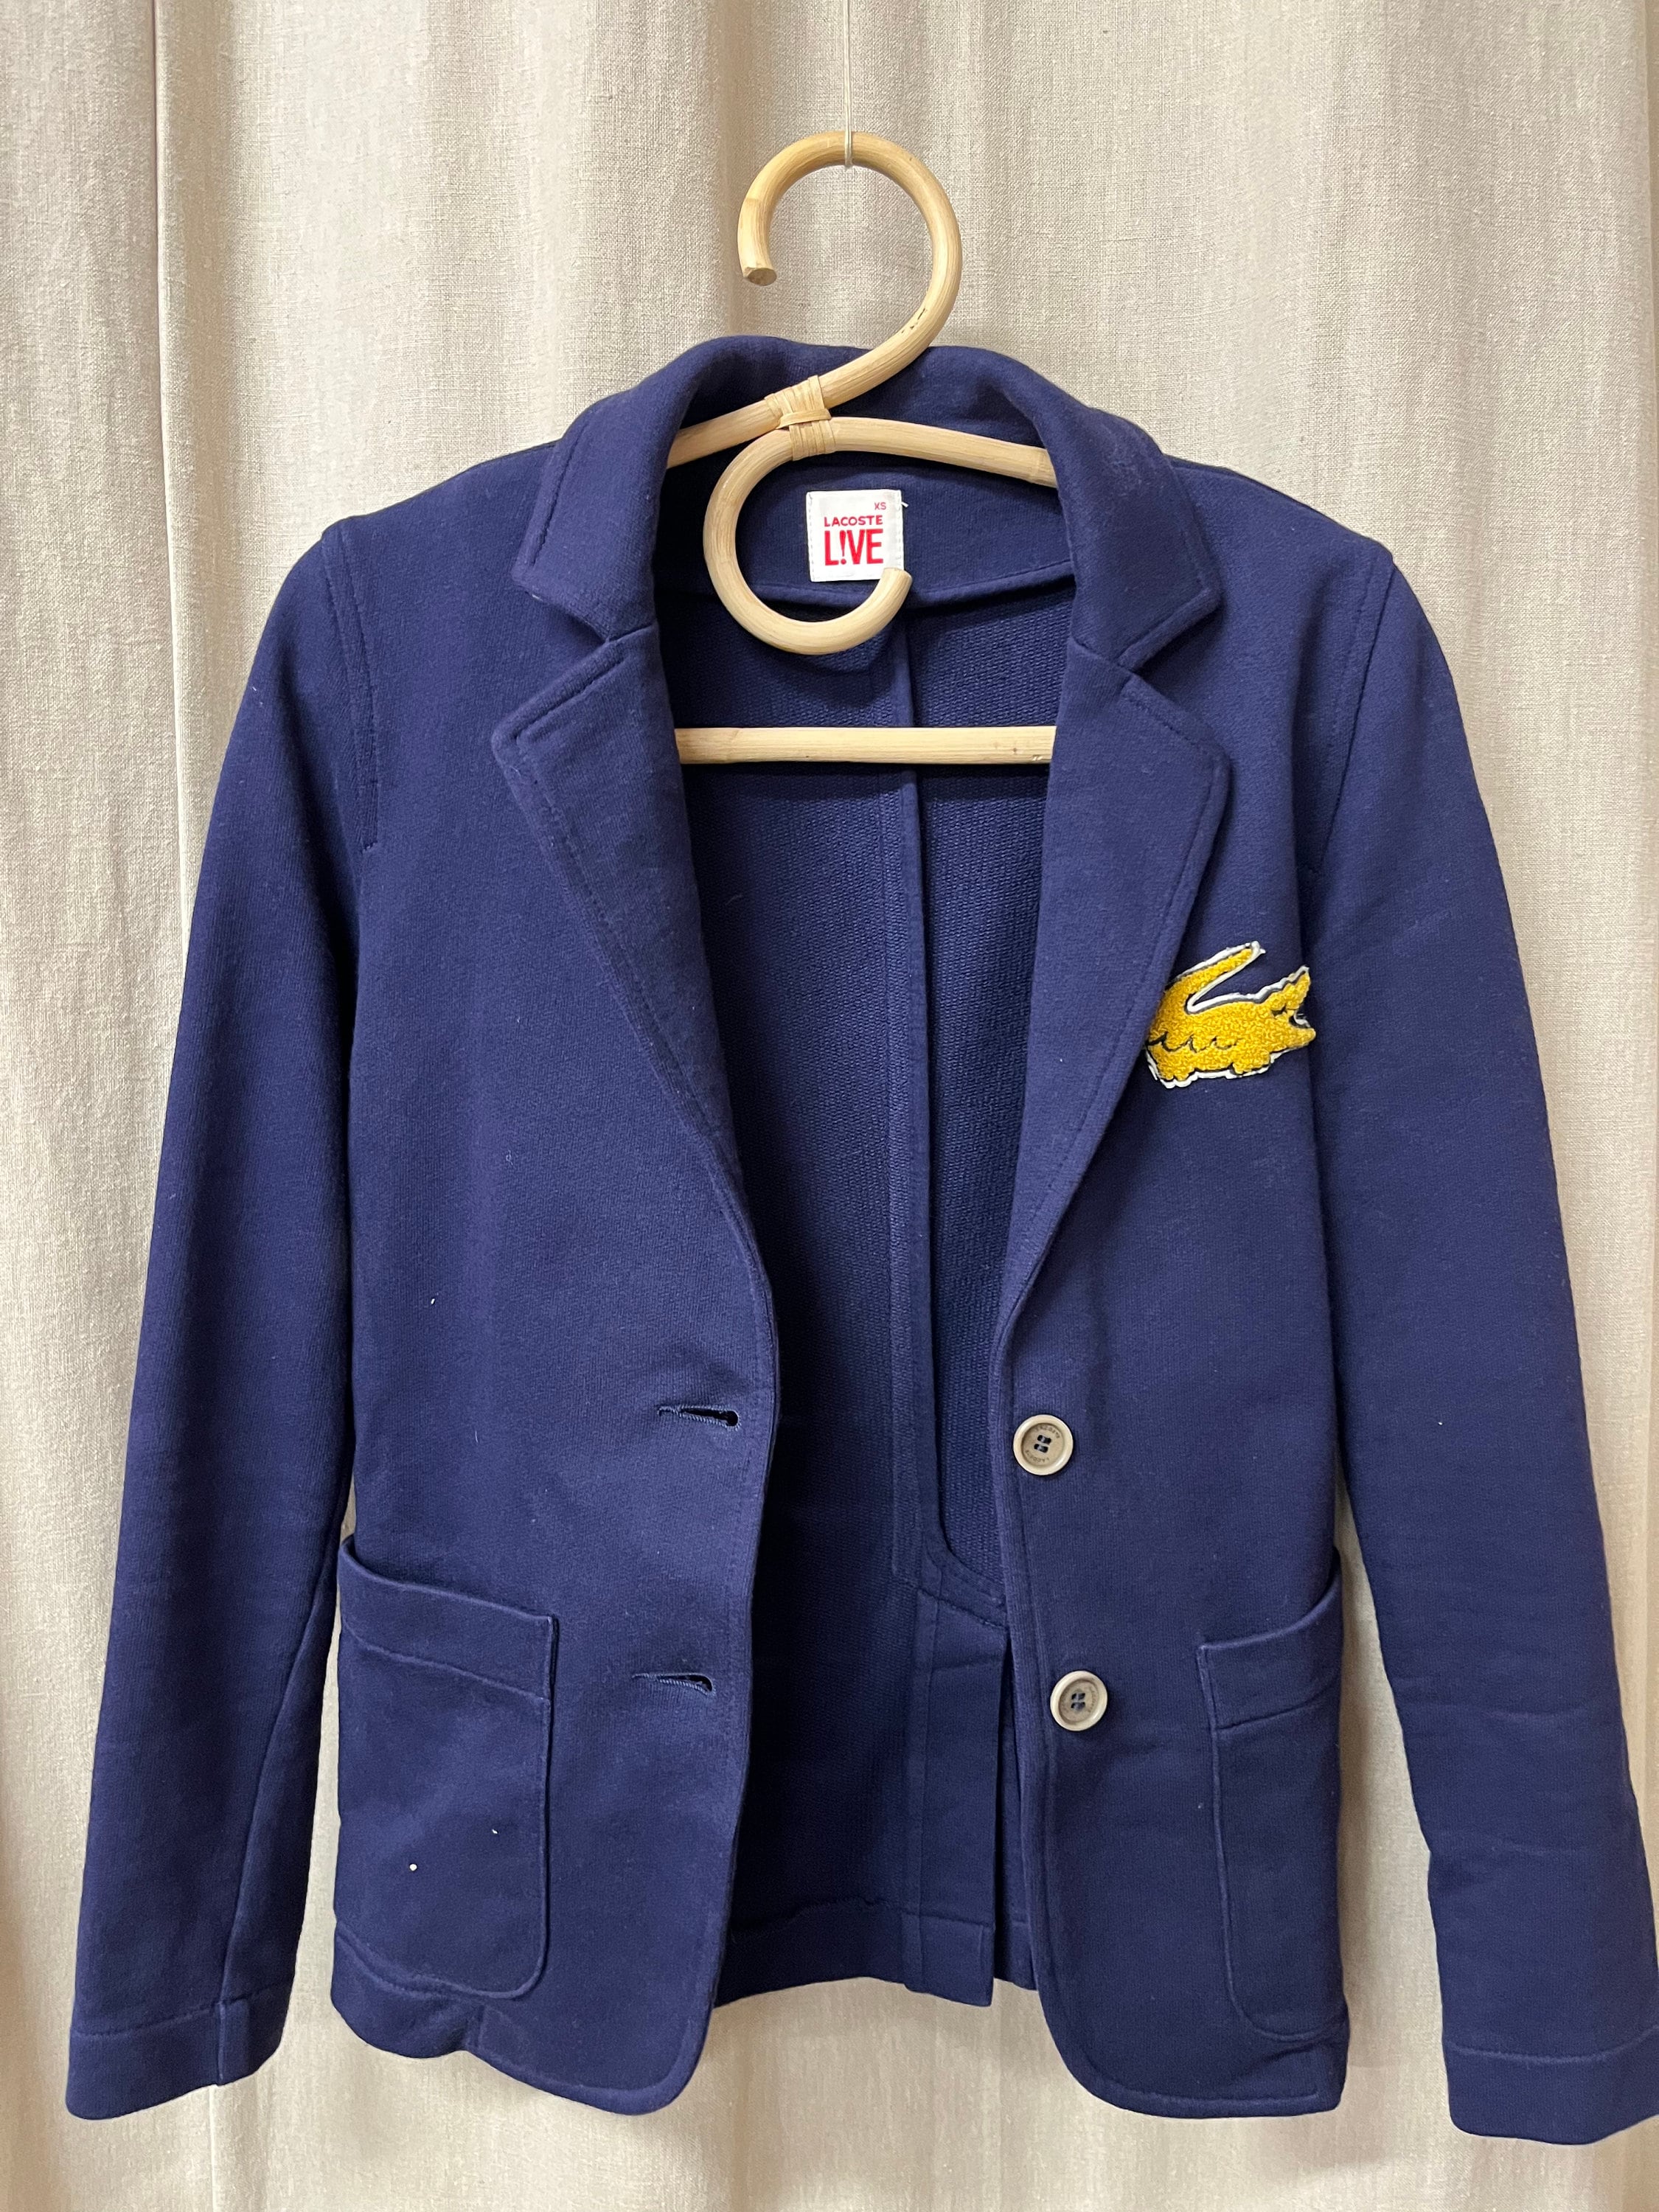 Raffinere Mansion bøf Vintage RARE Lacoste Live Navy Blue Blazer Jacket Buttoned - Etsy Denmark